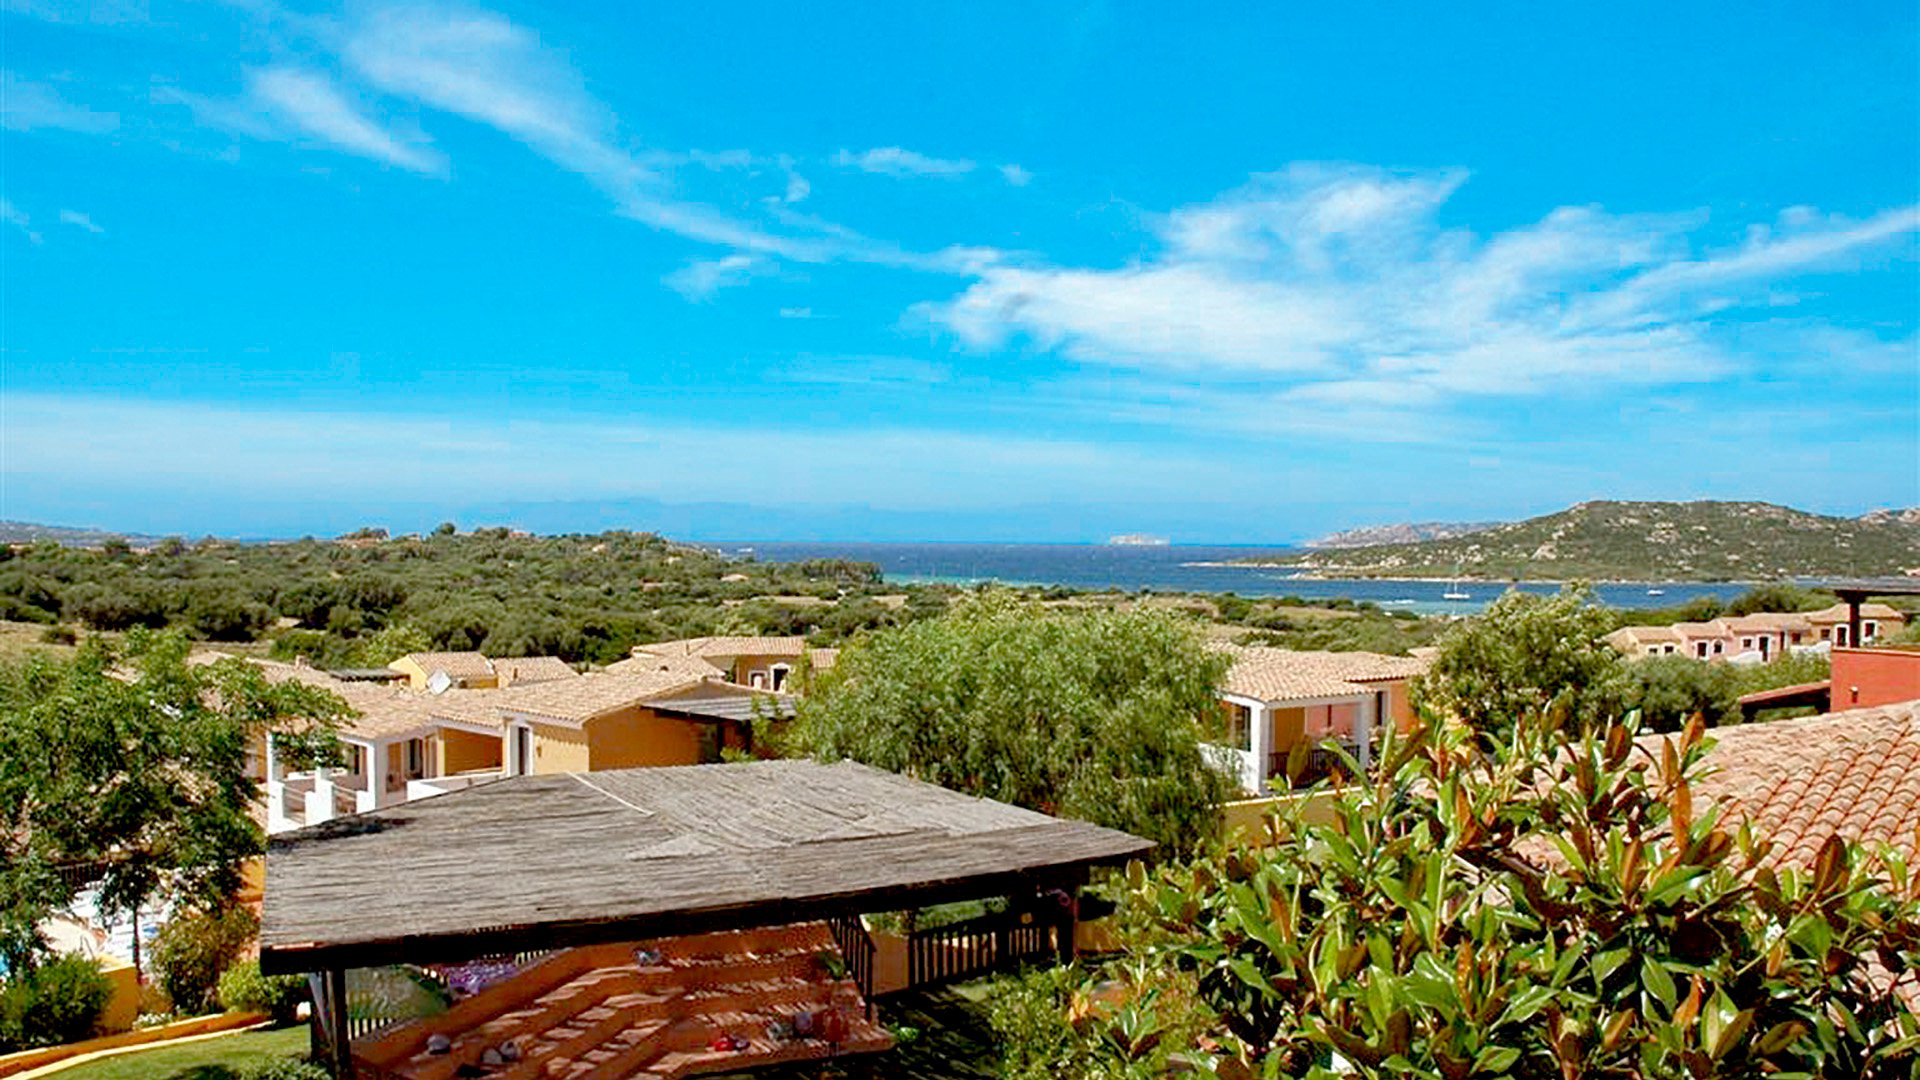 Hotel iGV Club Santa Clara - Sardinia, Italy - Holidays, Reviews | ITAKA